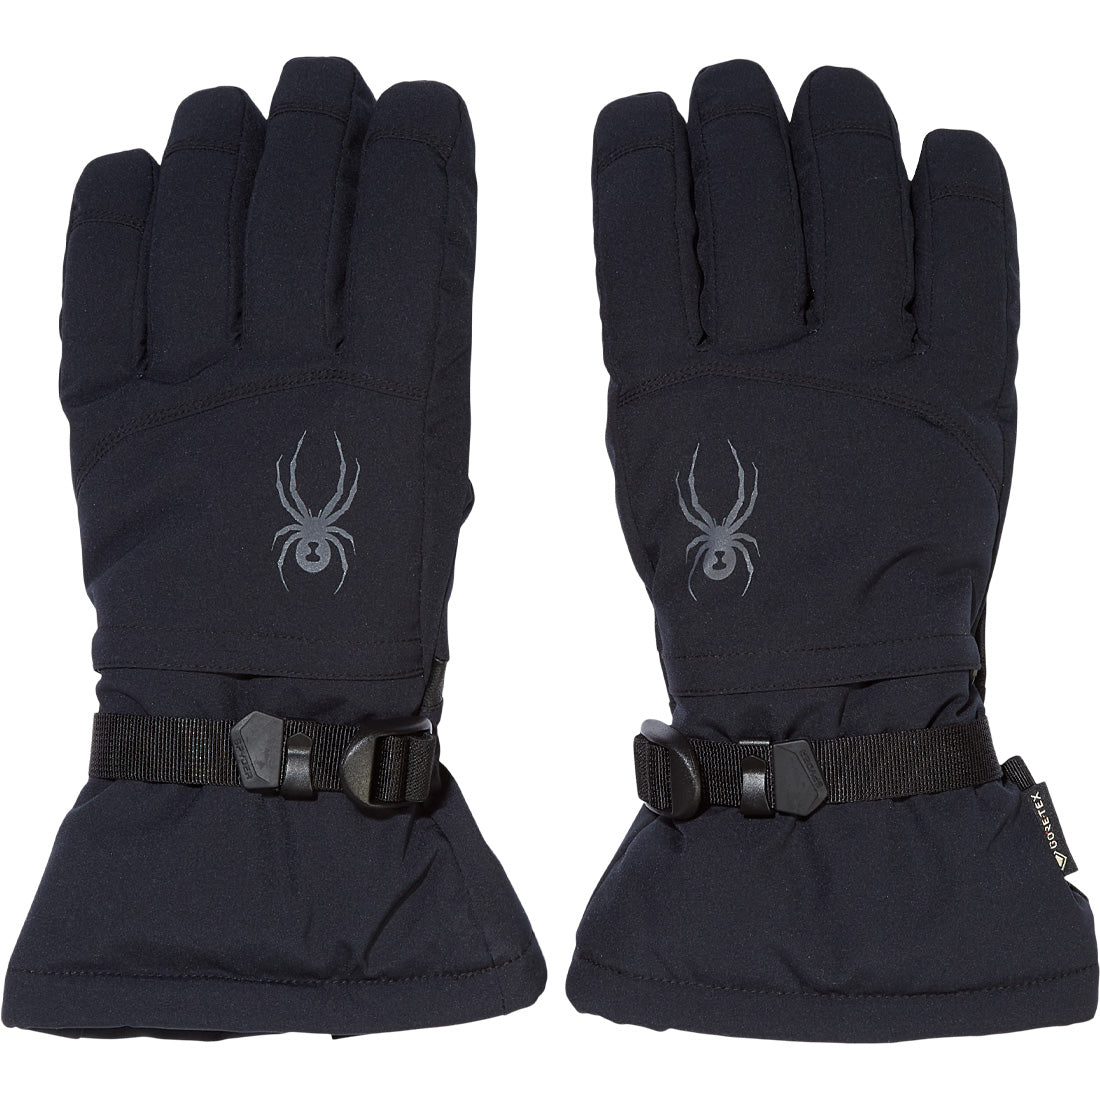 Spyder Traverse GTX Glove - Men's